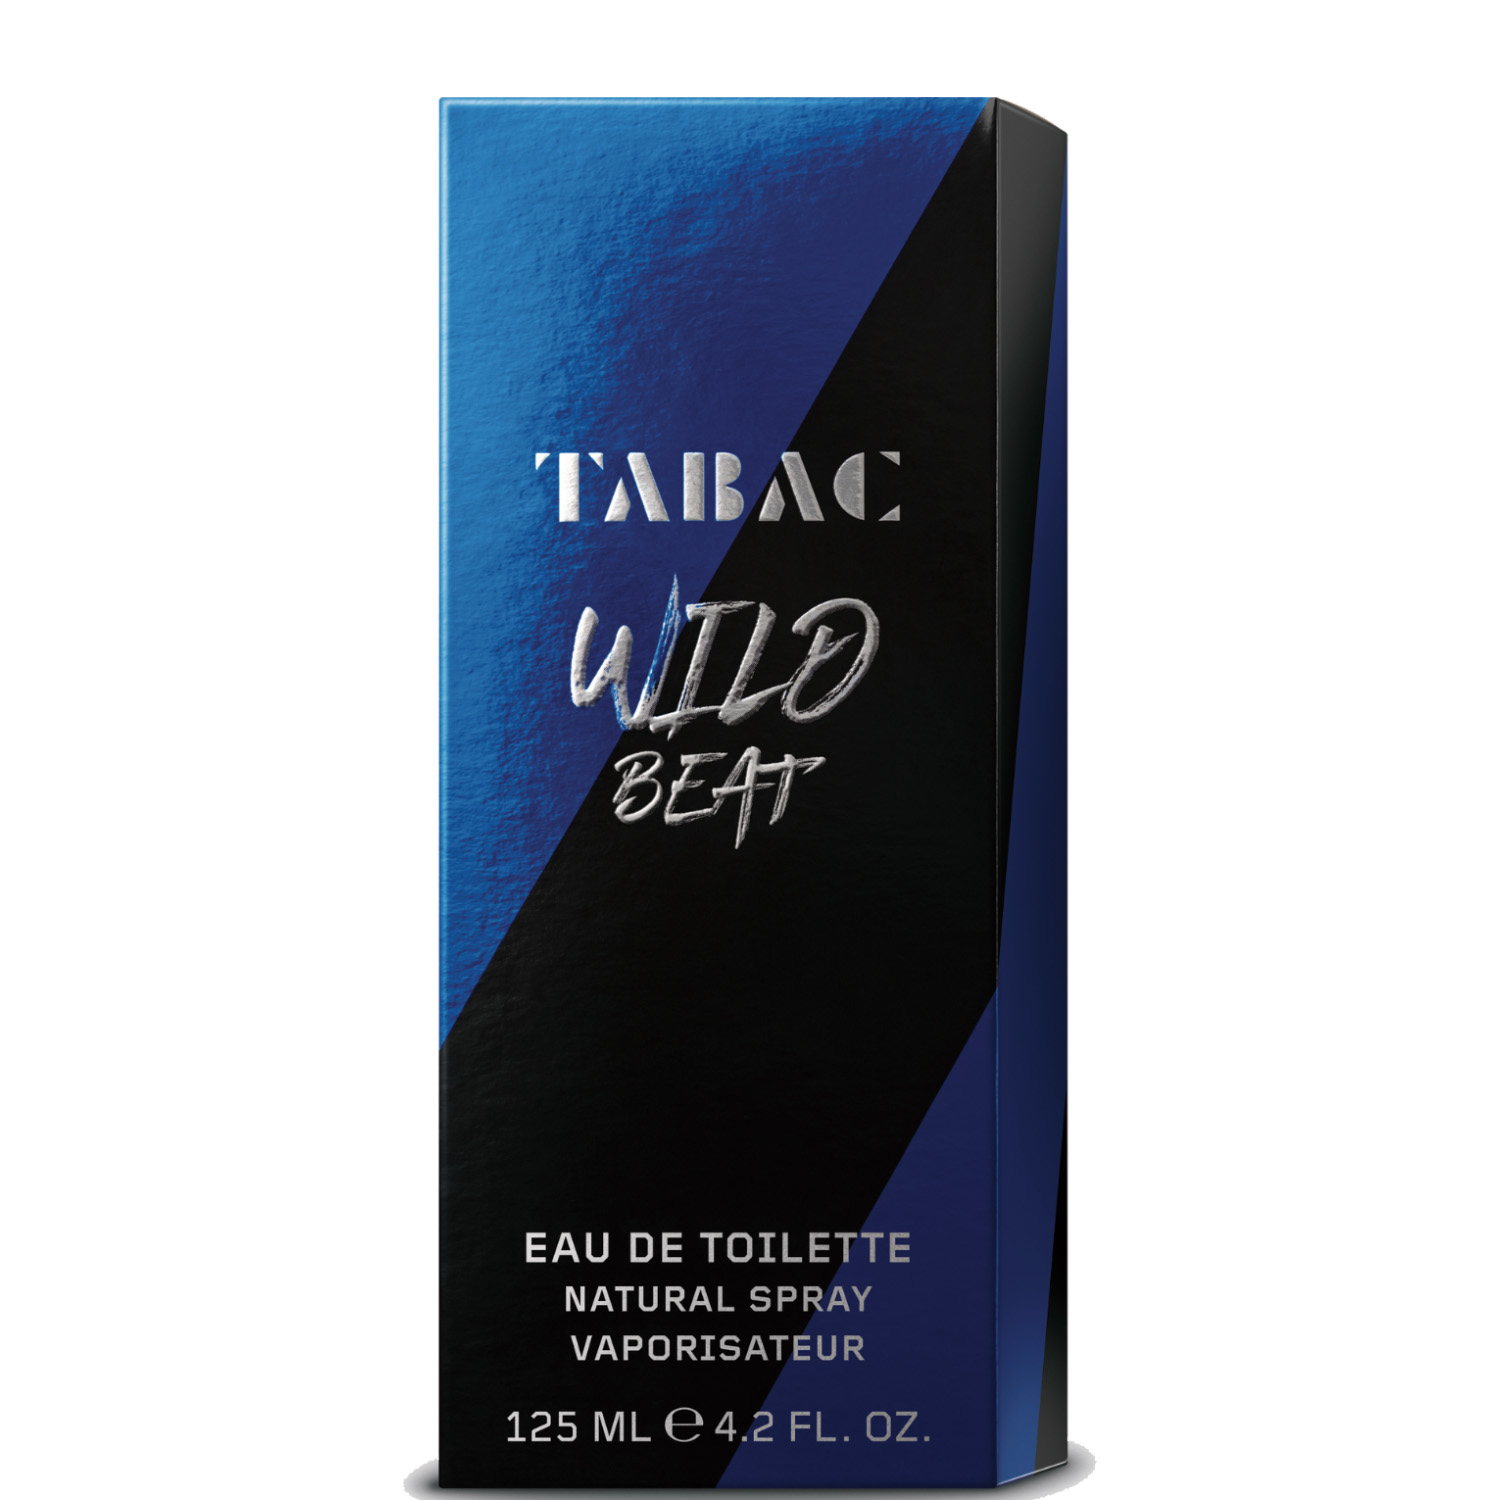 Tabac Wild Beat Eau de Toilette 125ml